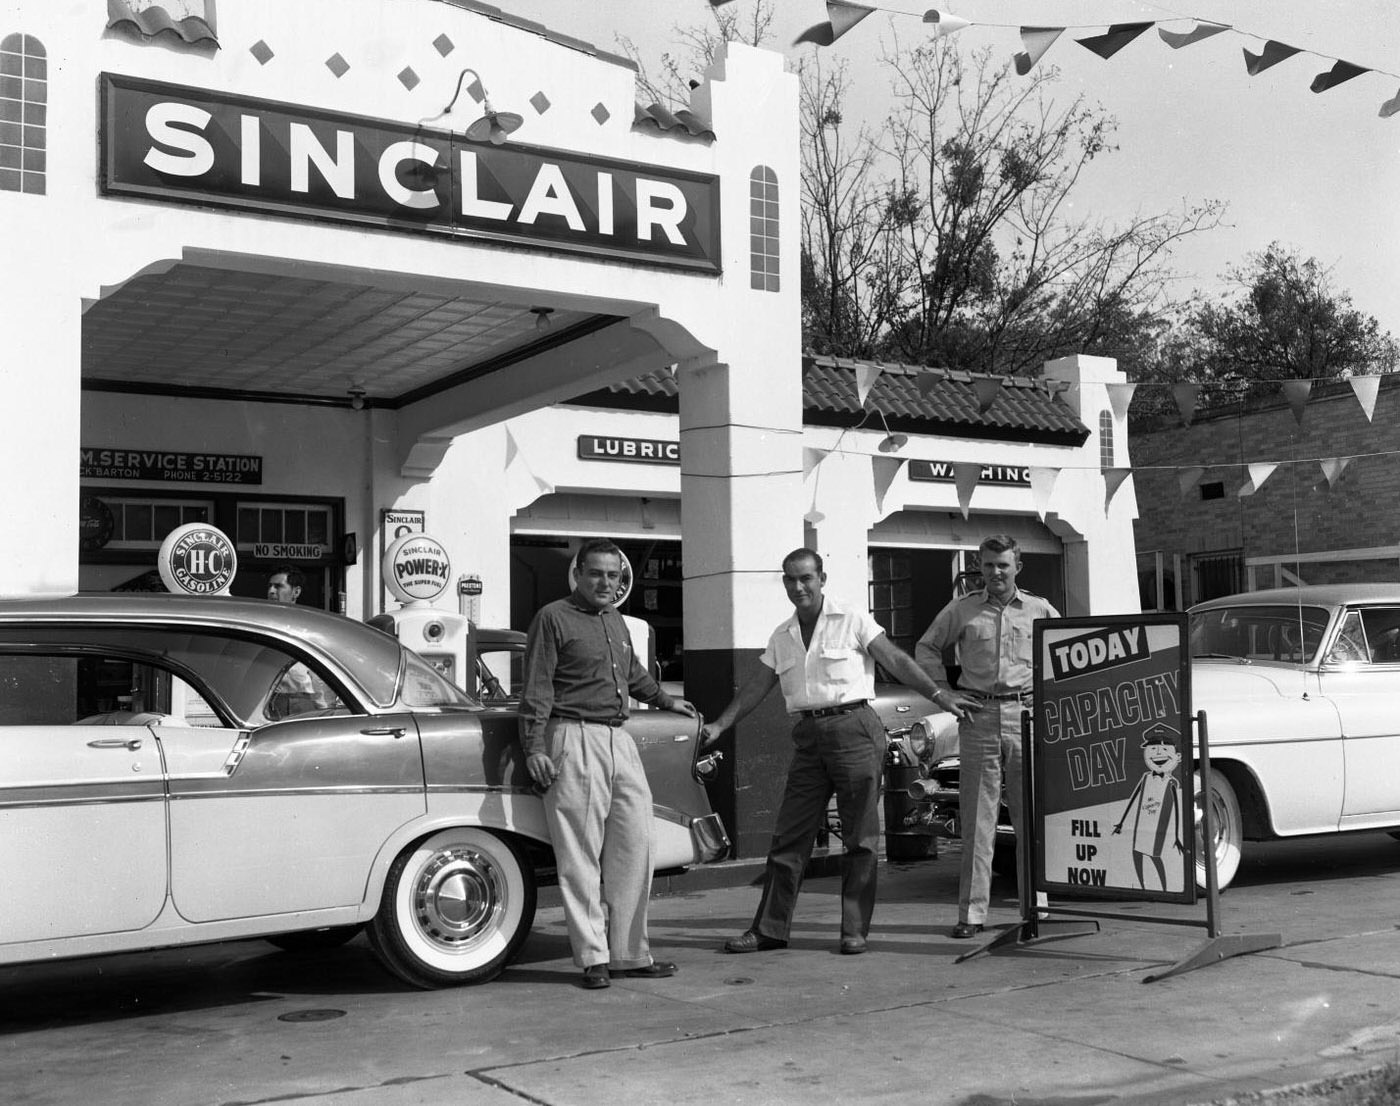 J&M Sinclair Service Station, 1955.